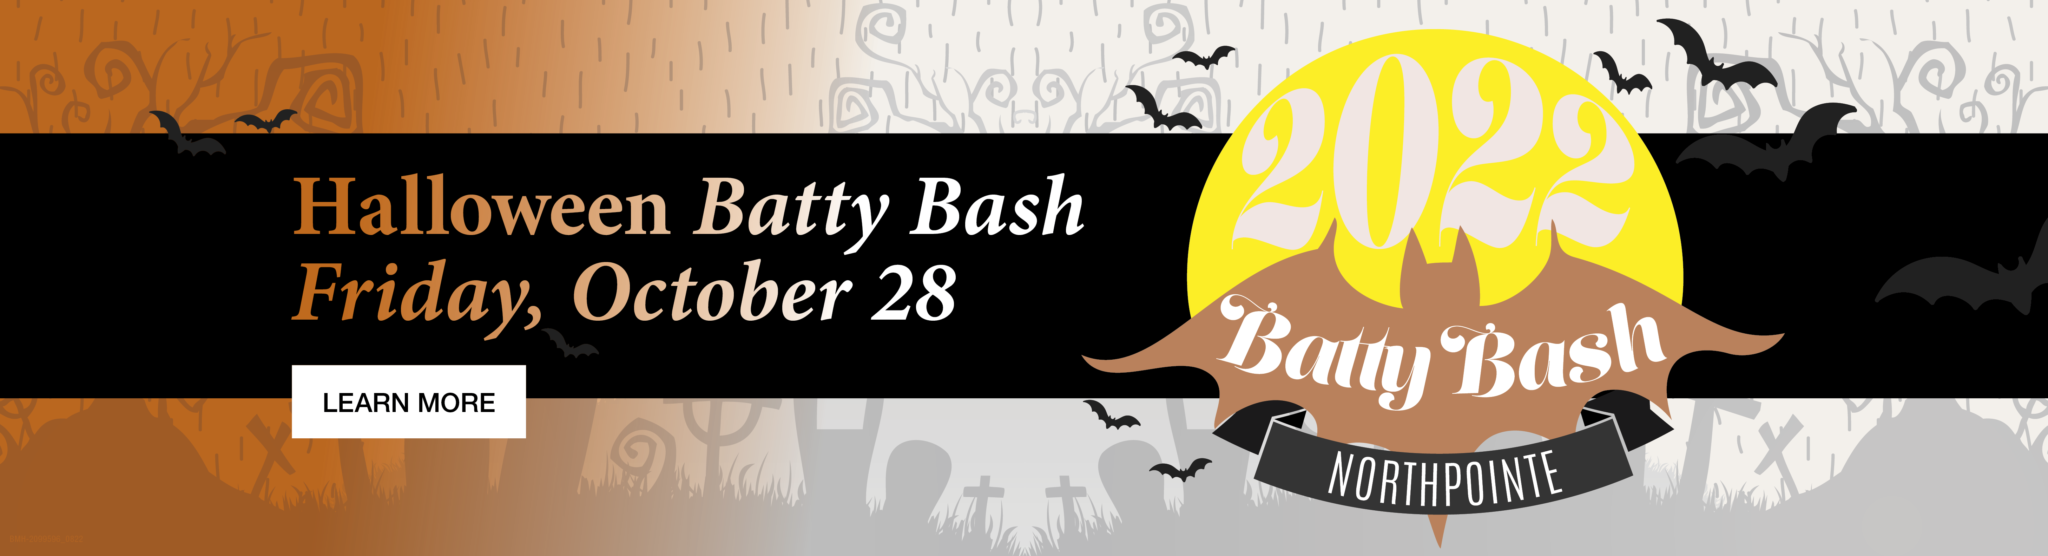 Halloween Batty Bash